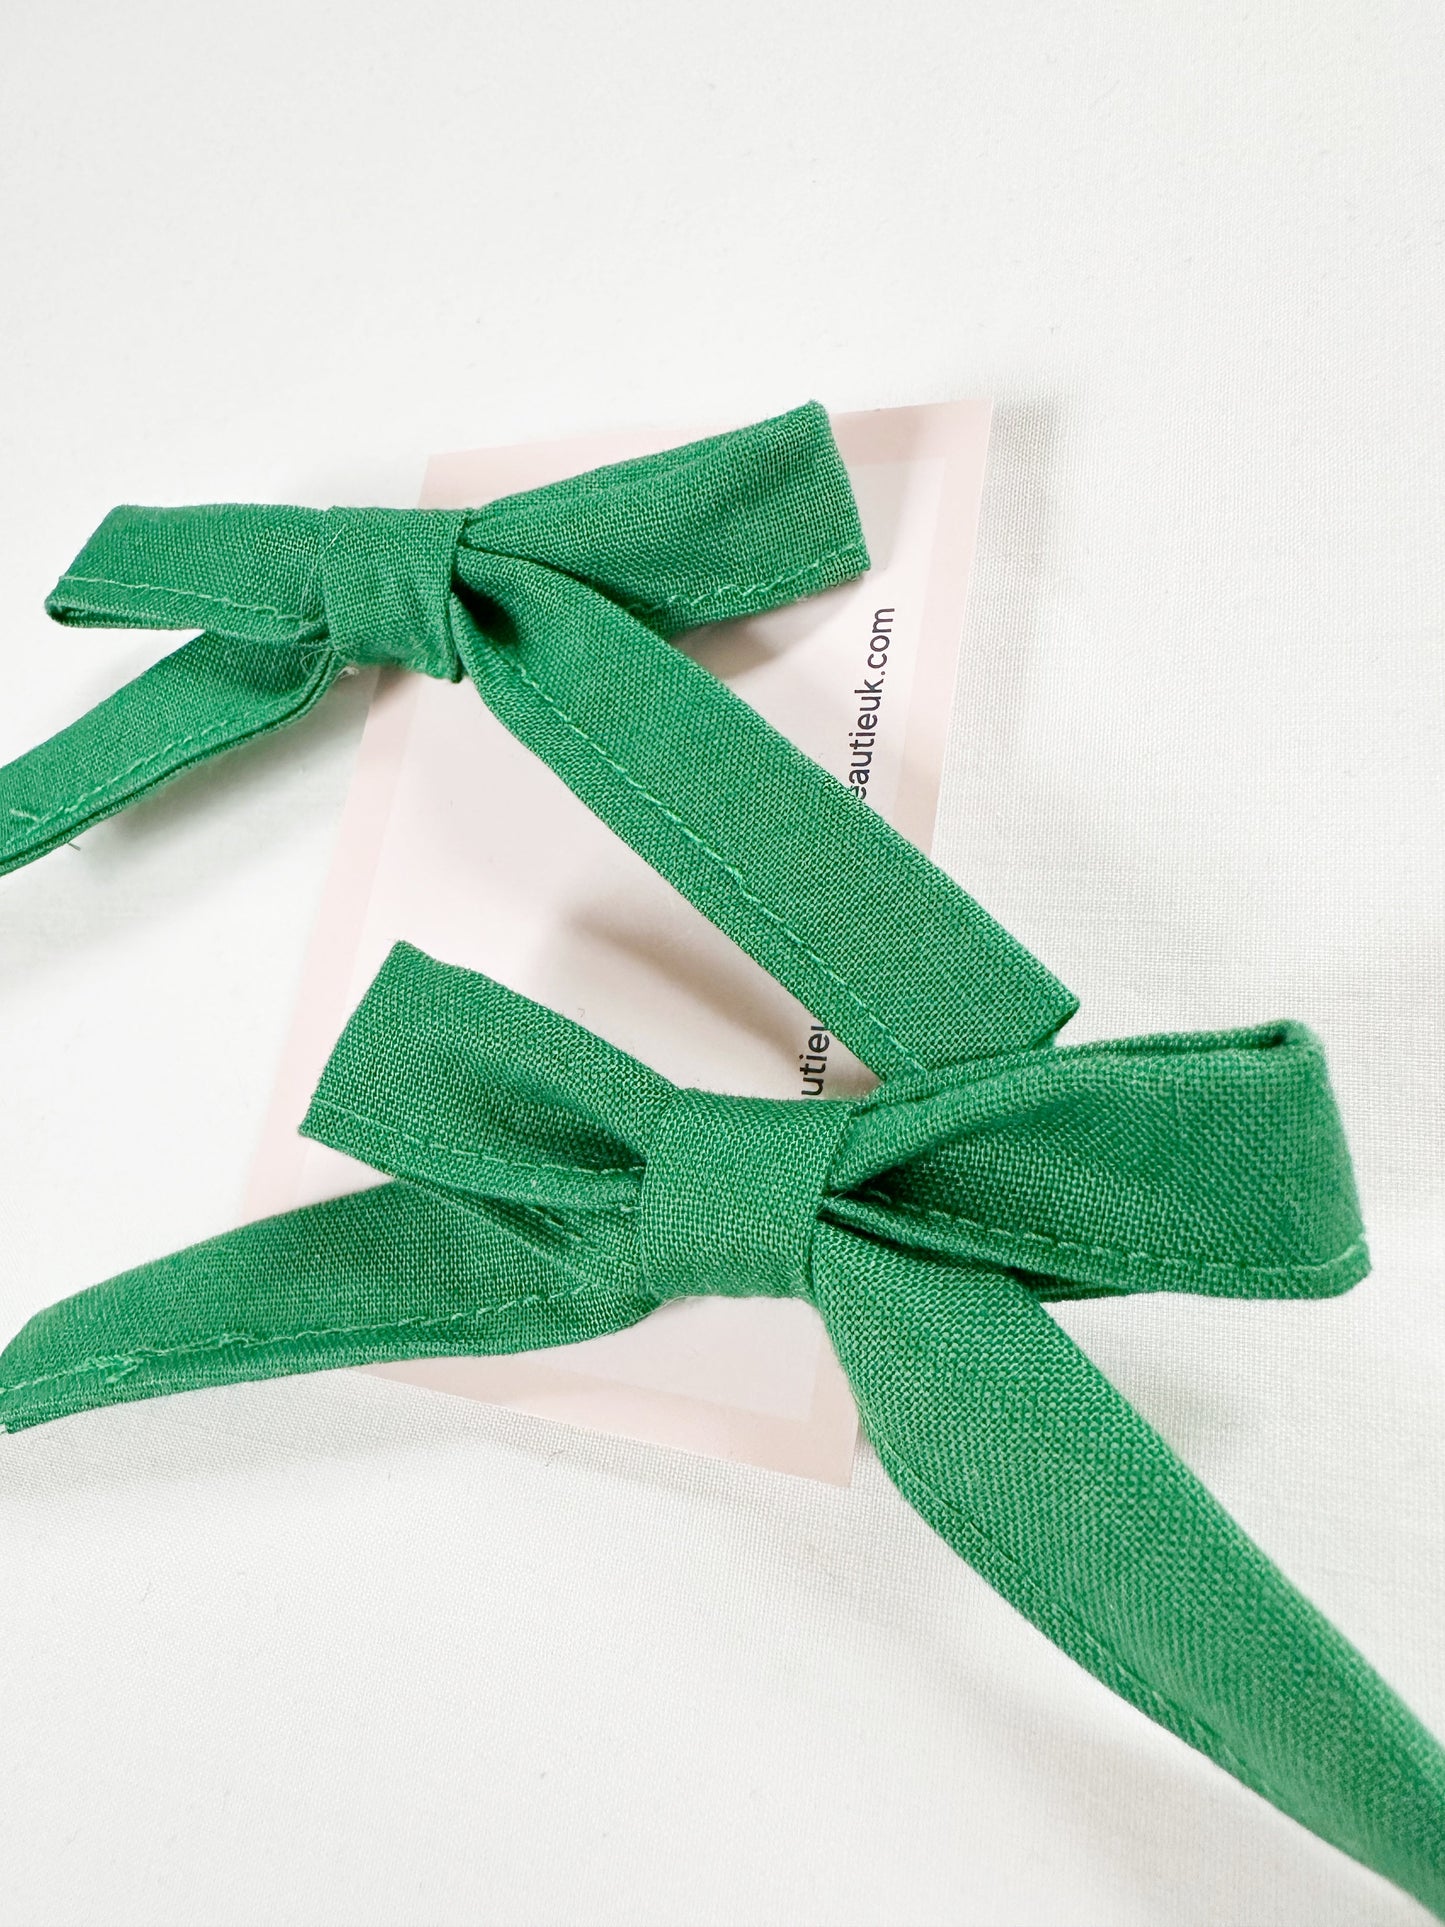 Bonnie mini hair bow set in green